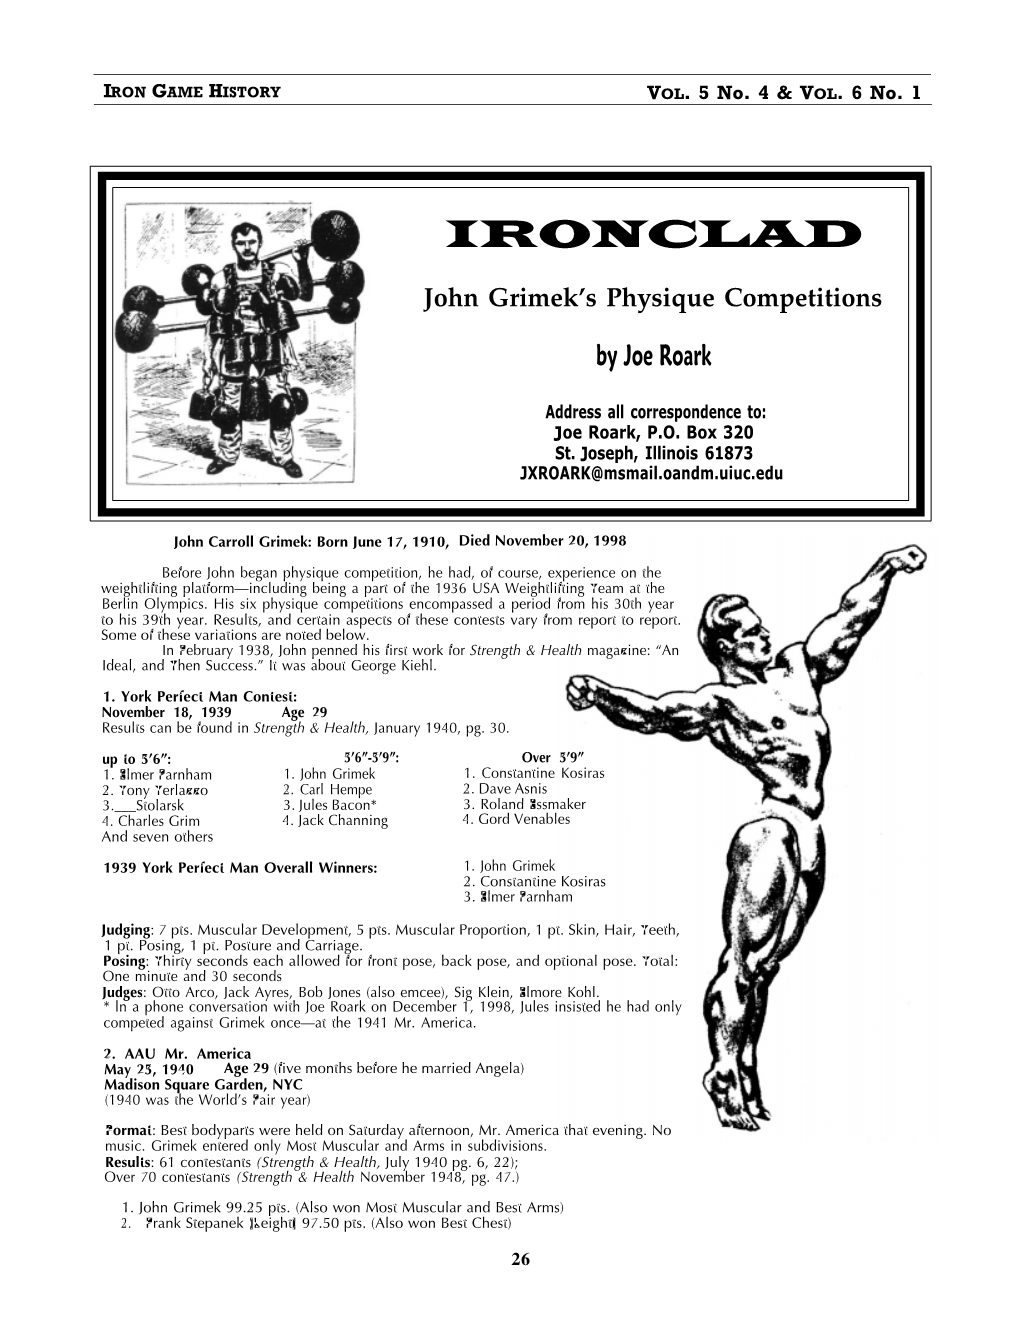 Ironclad John Grimeks Physique Competitions